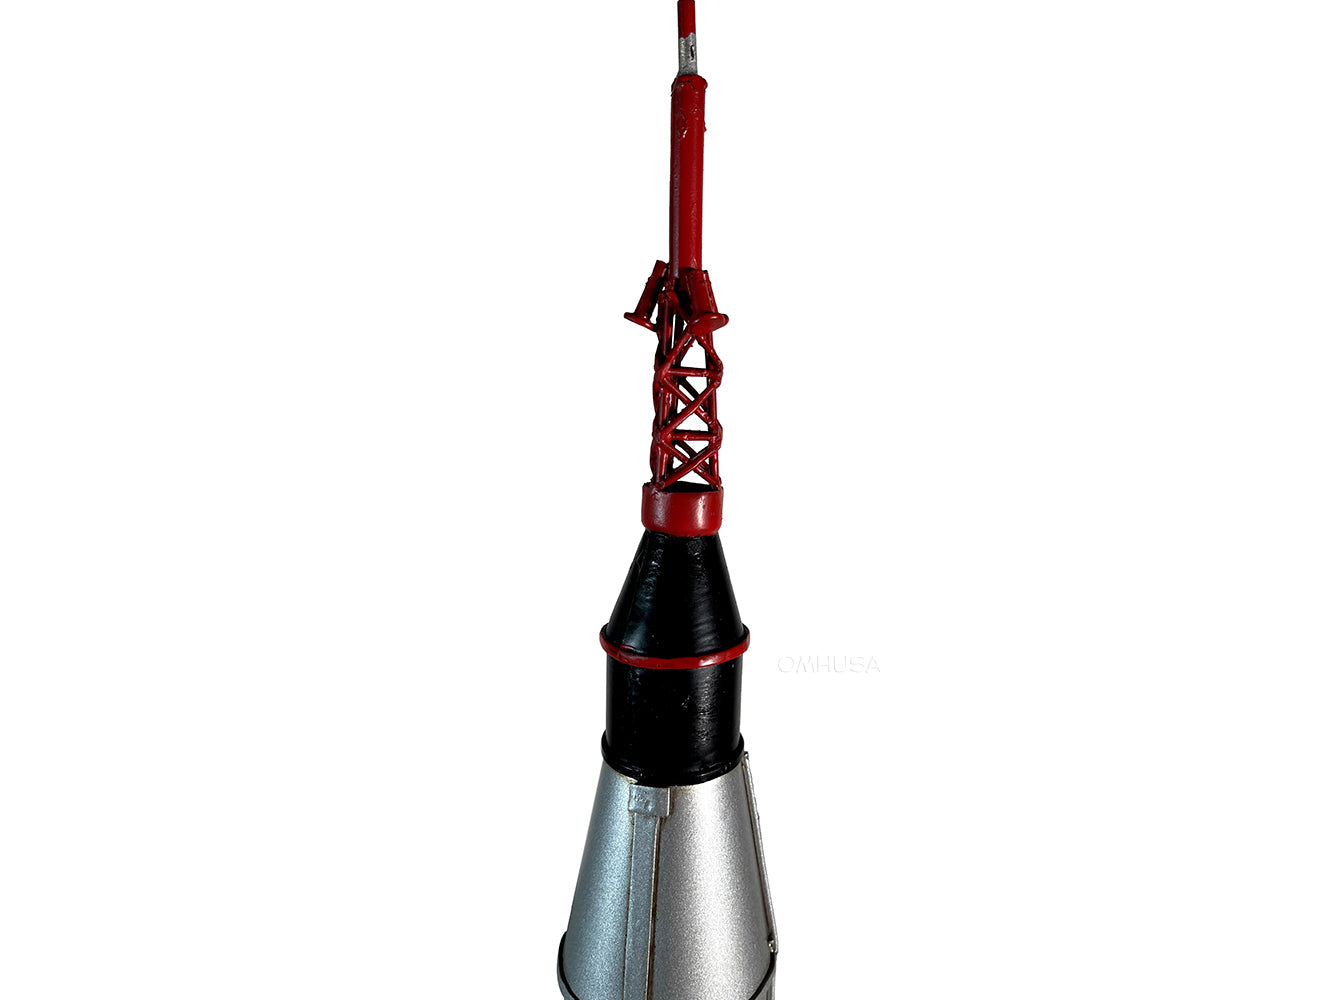 ALDO Creative Arts Collectibles Scale Model NASA Metal Mercury Atlas Rocket Display Model Spacecraft Model